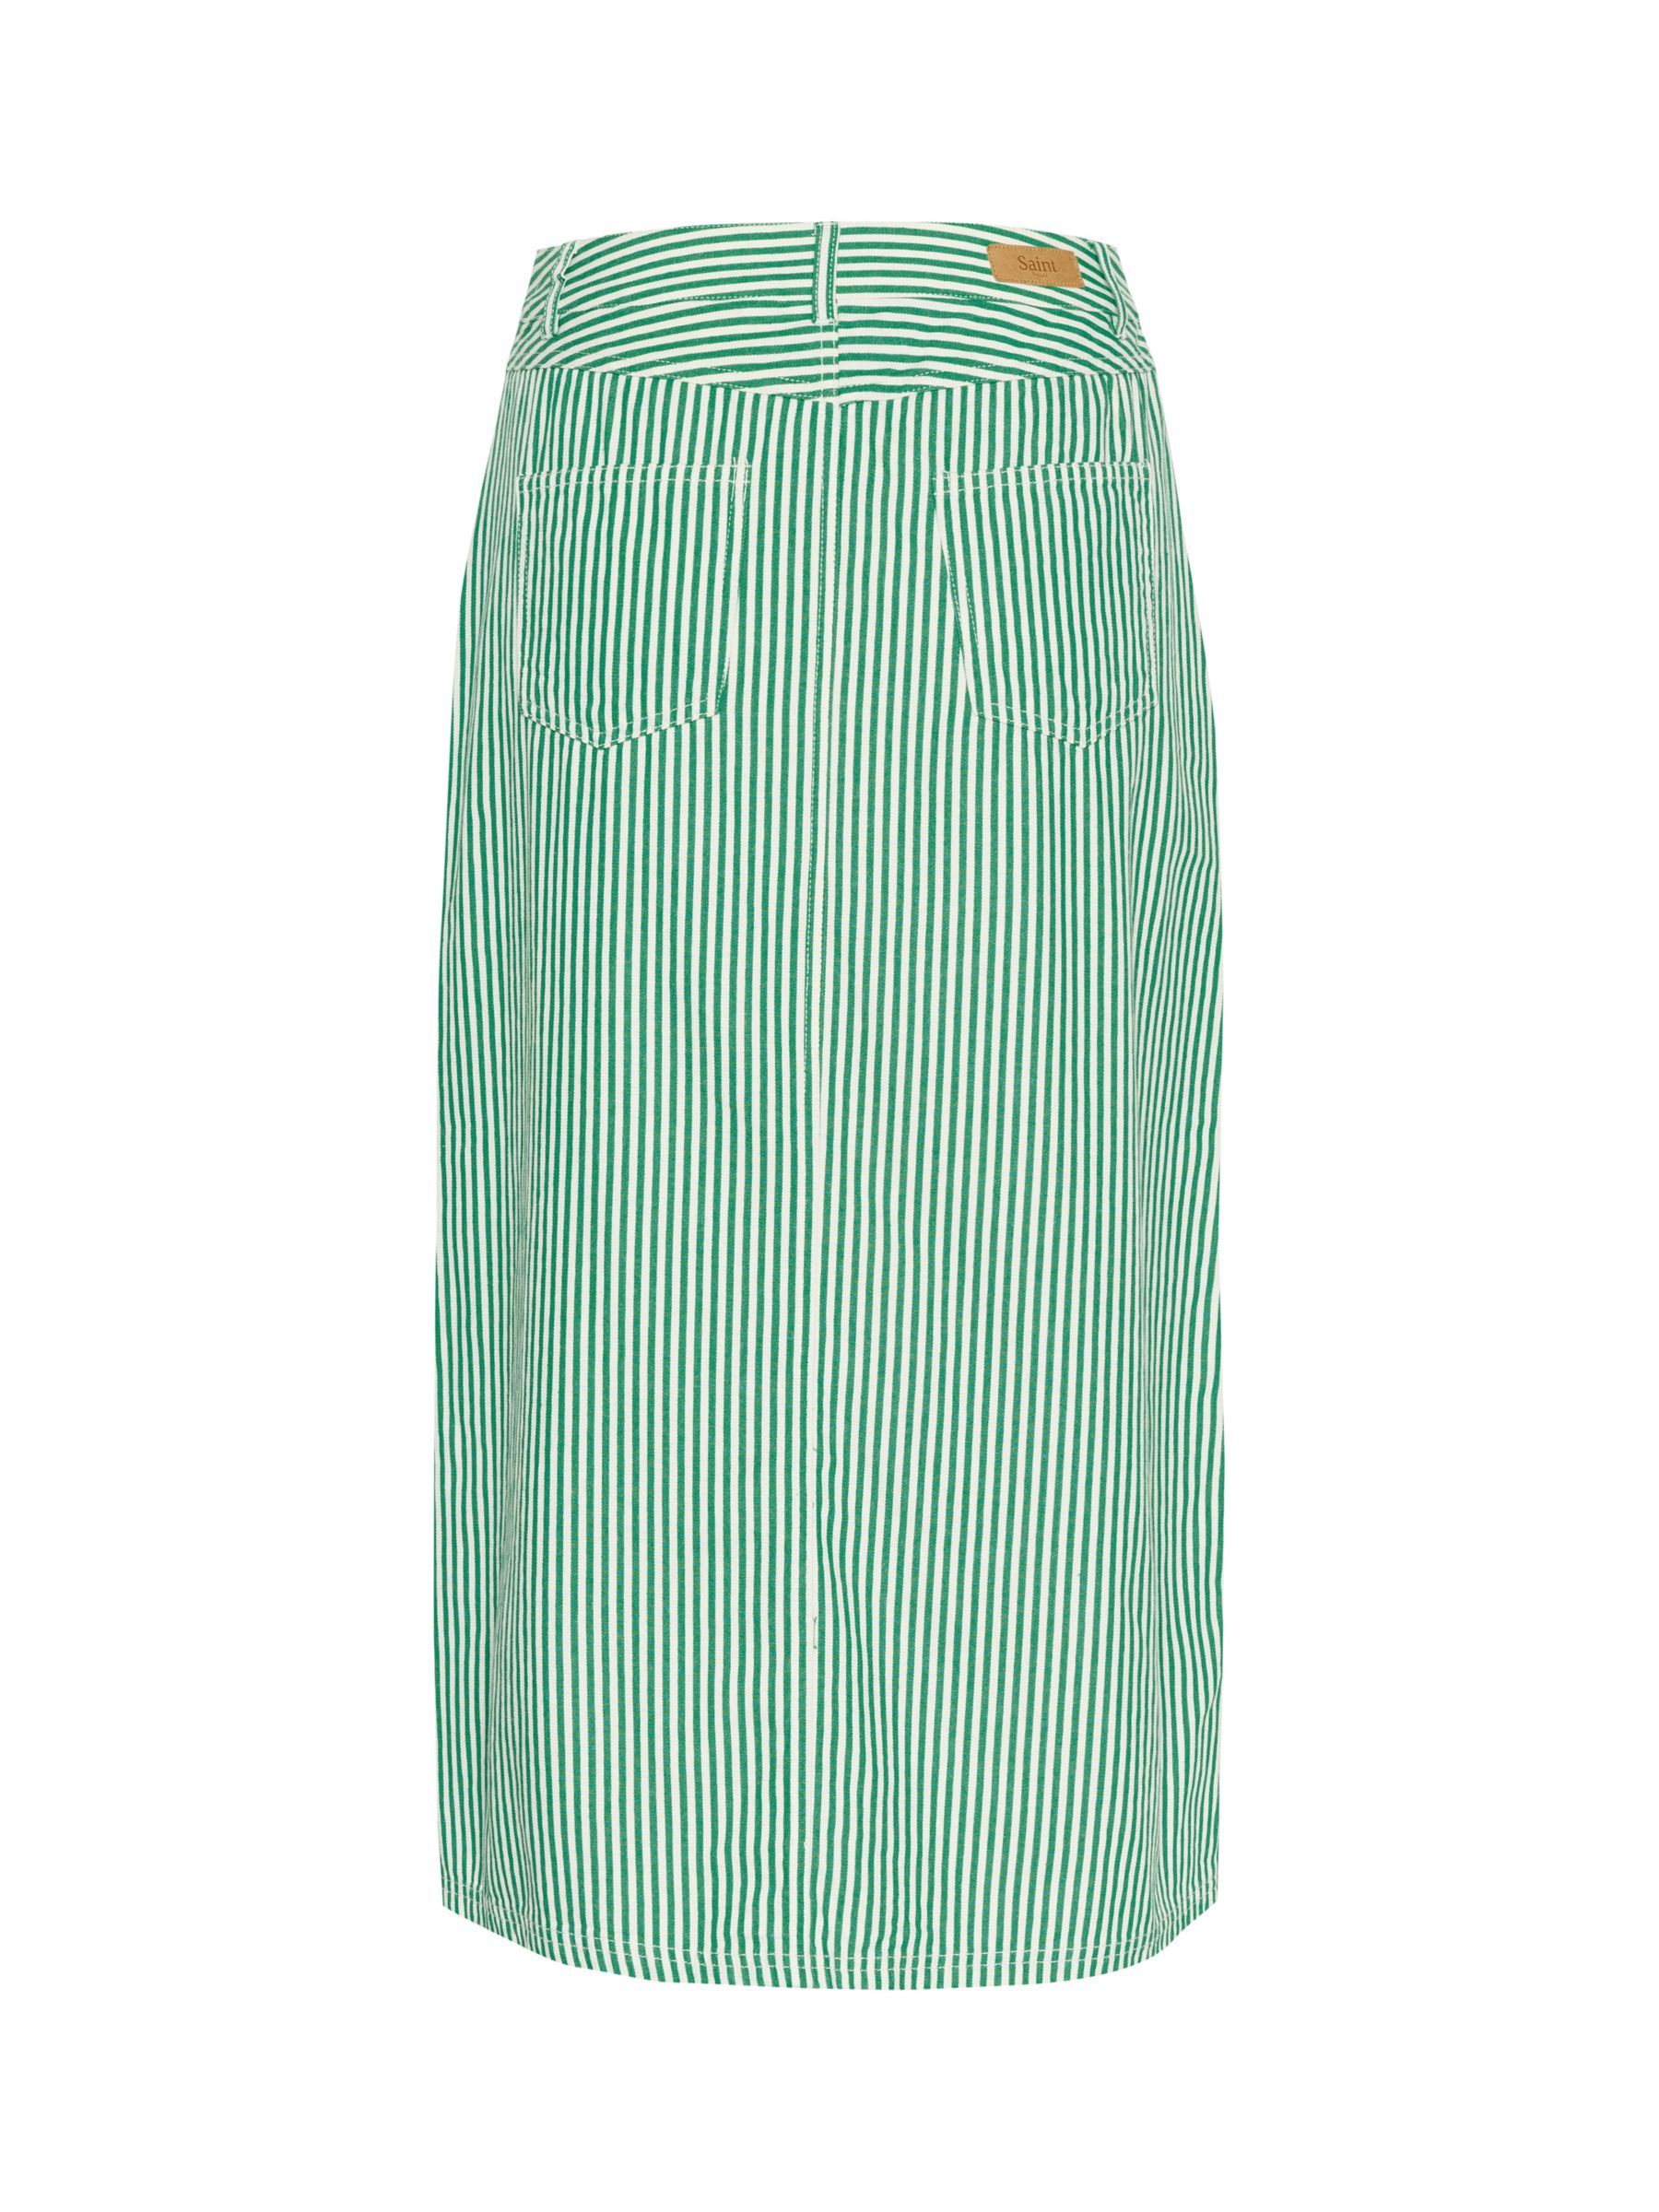 Buy Saint Tropez Ditten High Waisted Striped Maxi Skirt, Jelly Bean Online at johnlewis.com